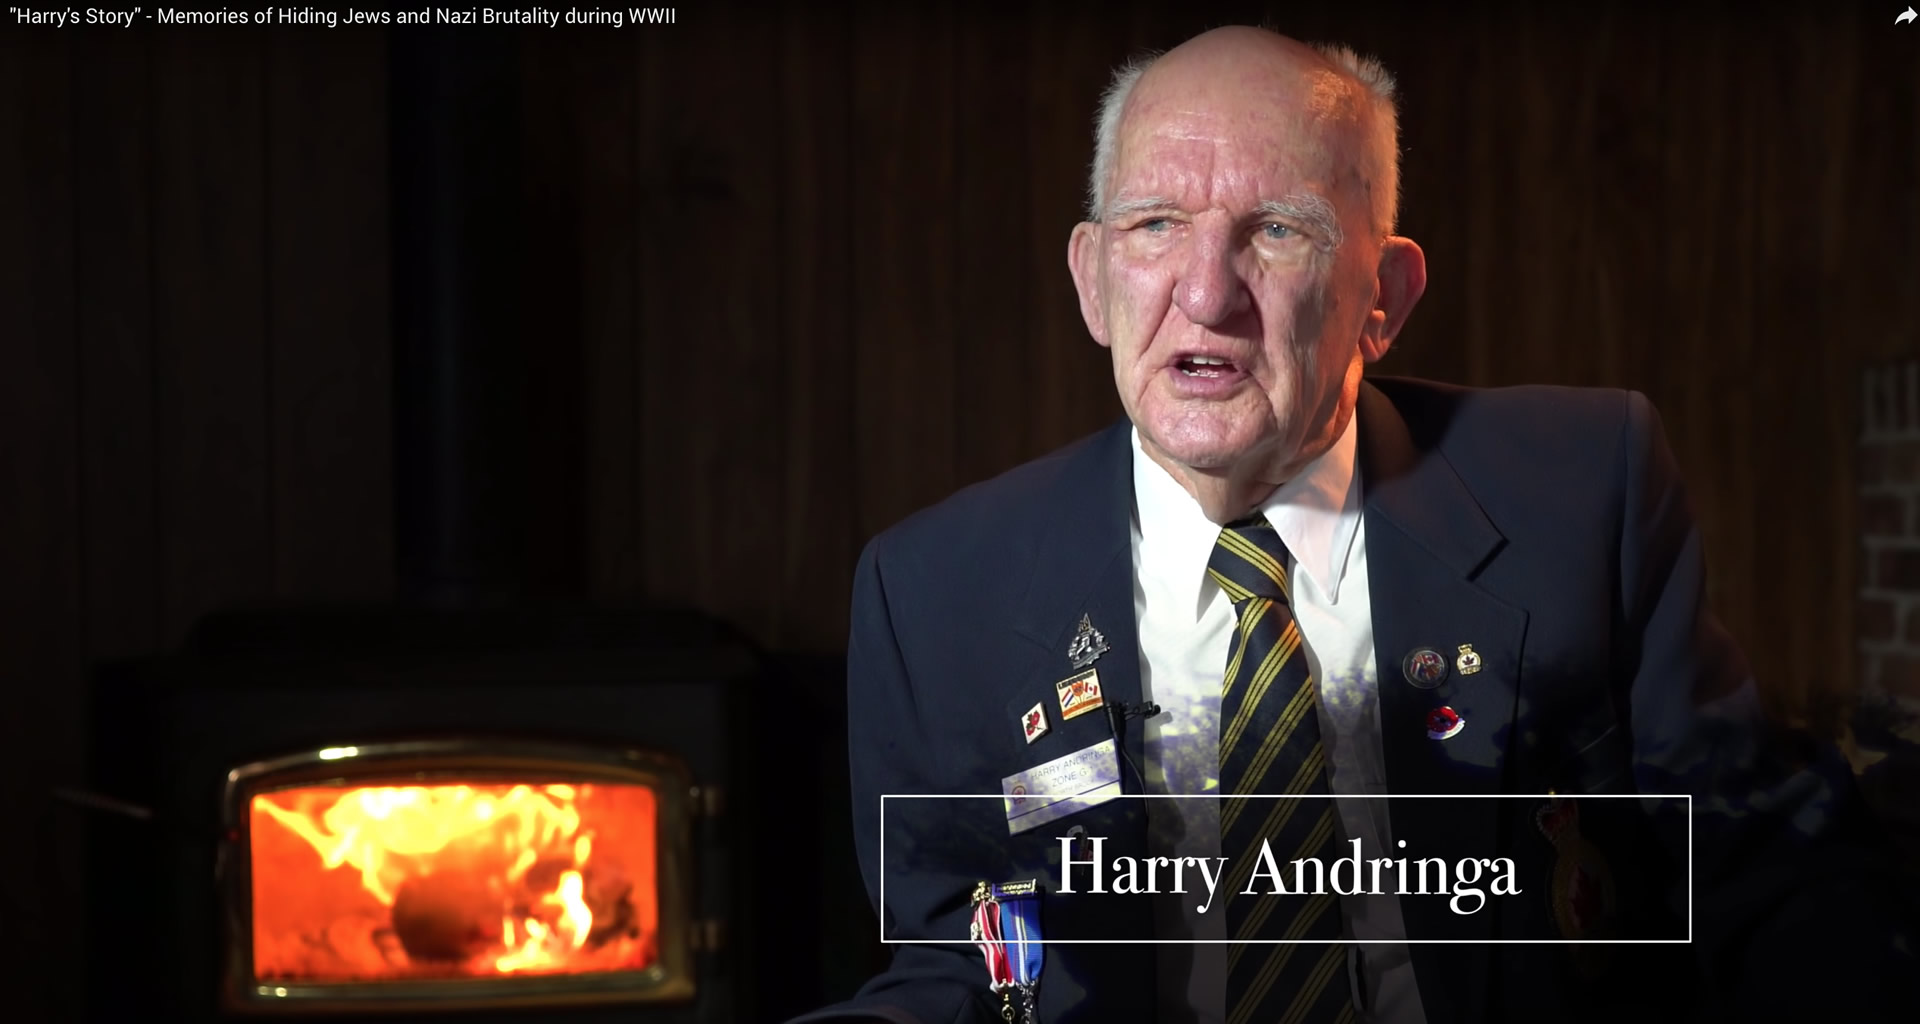 Harry Andringa - Harry's Story WWII documentary